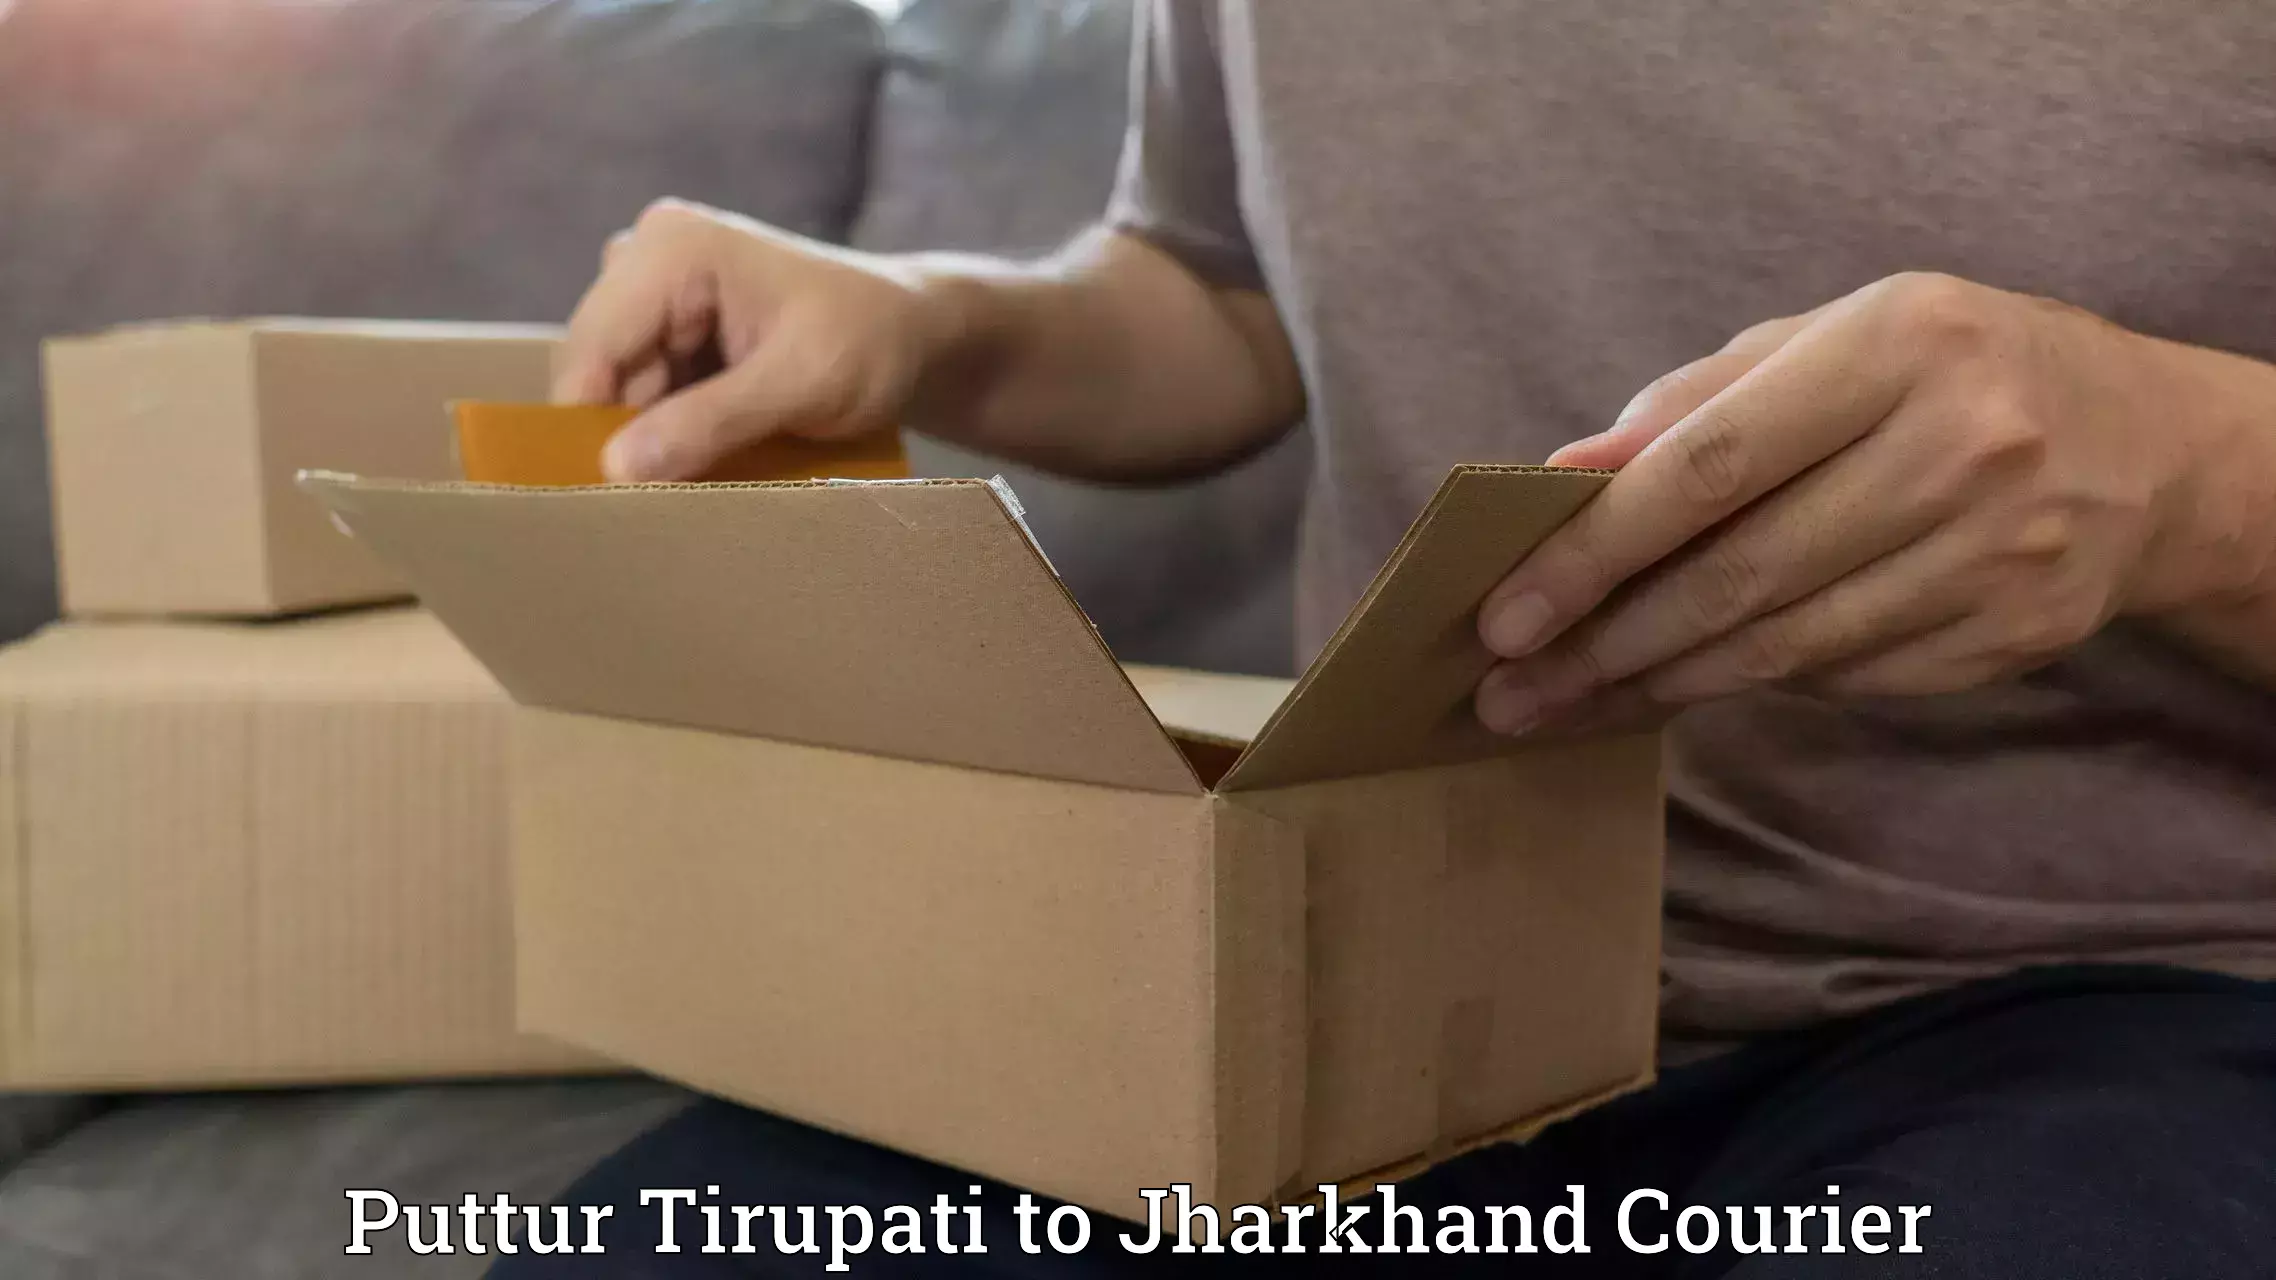 Pharmaceutical courier Puttur Tirupati to Bundu